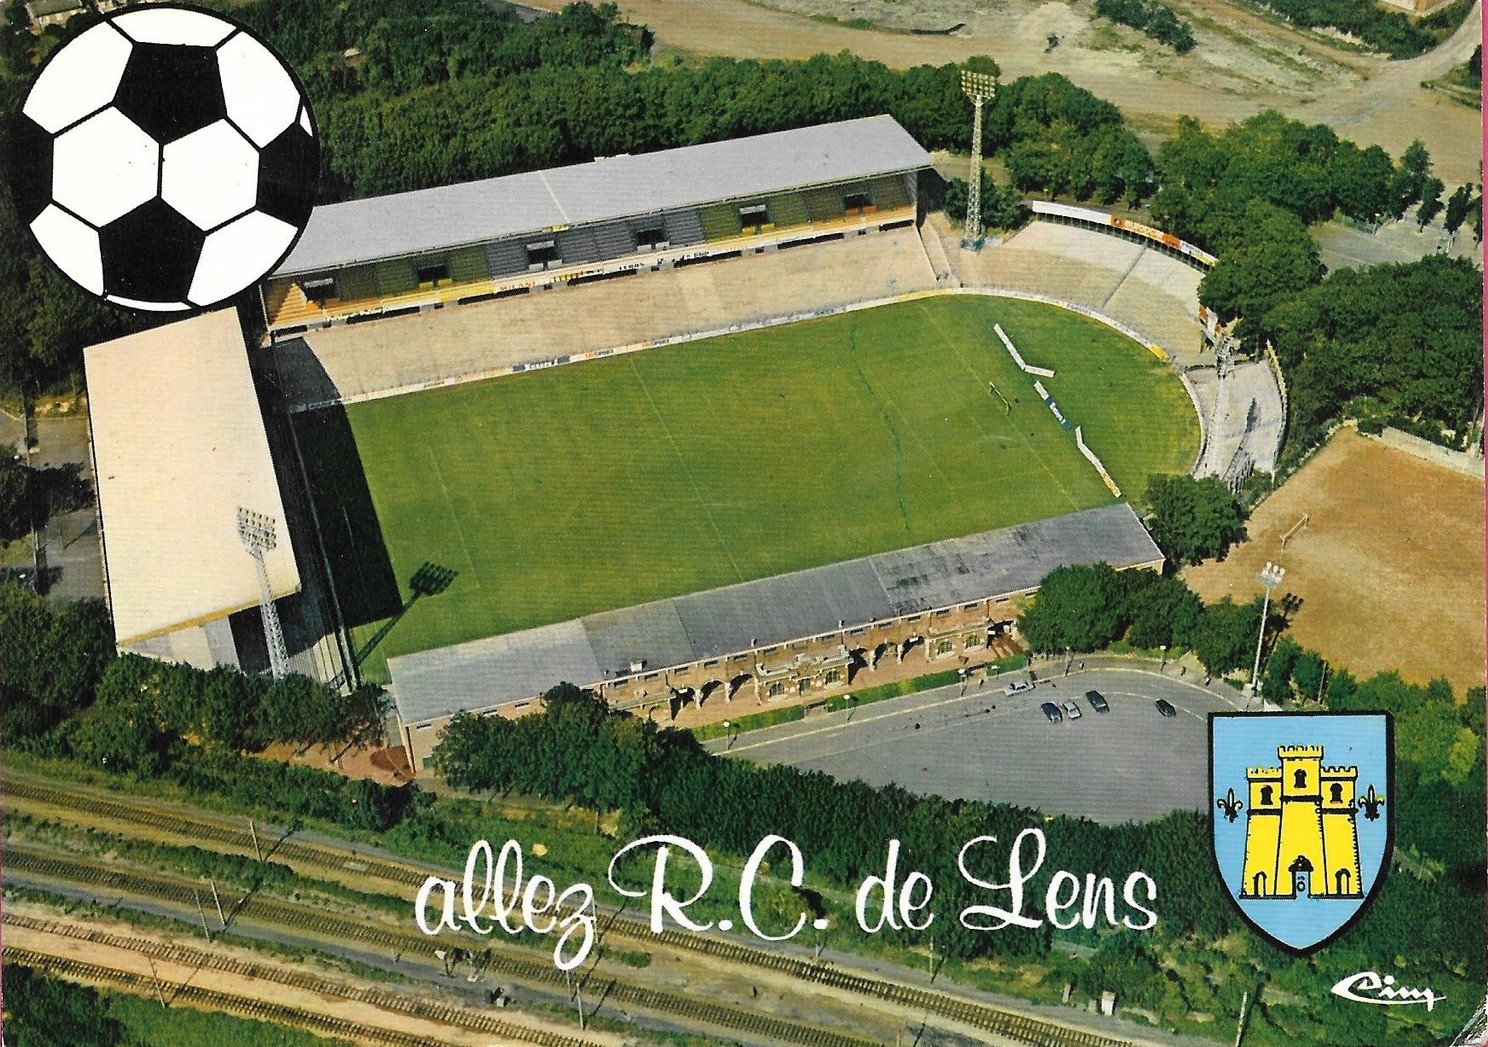 Histoire du Stade Félix Bollaert - surlatouche.fr